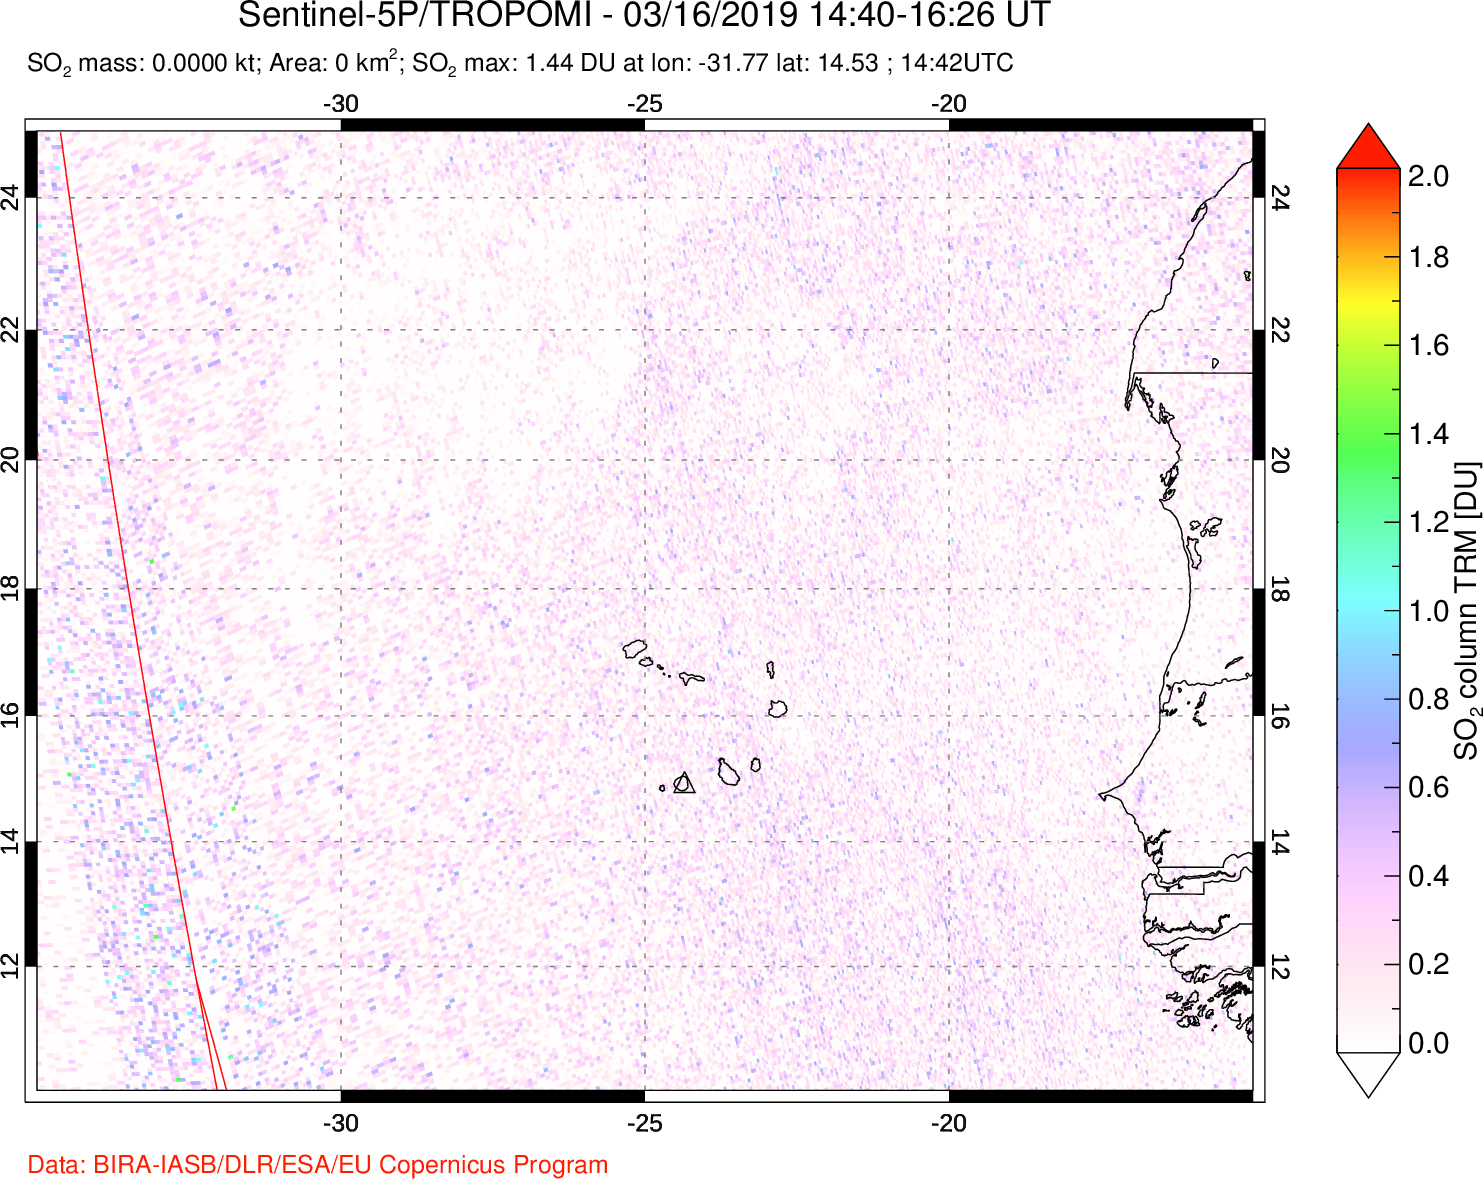 A sulfur dioxide image over Cape Verde Islands on Mar 16, 2019.